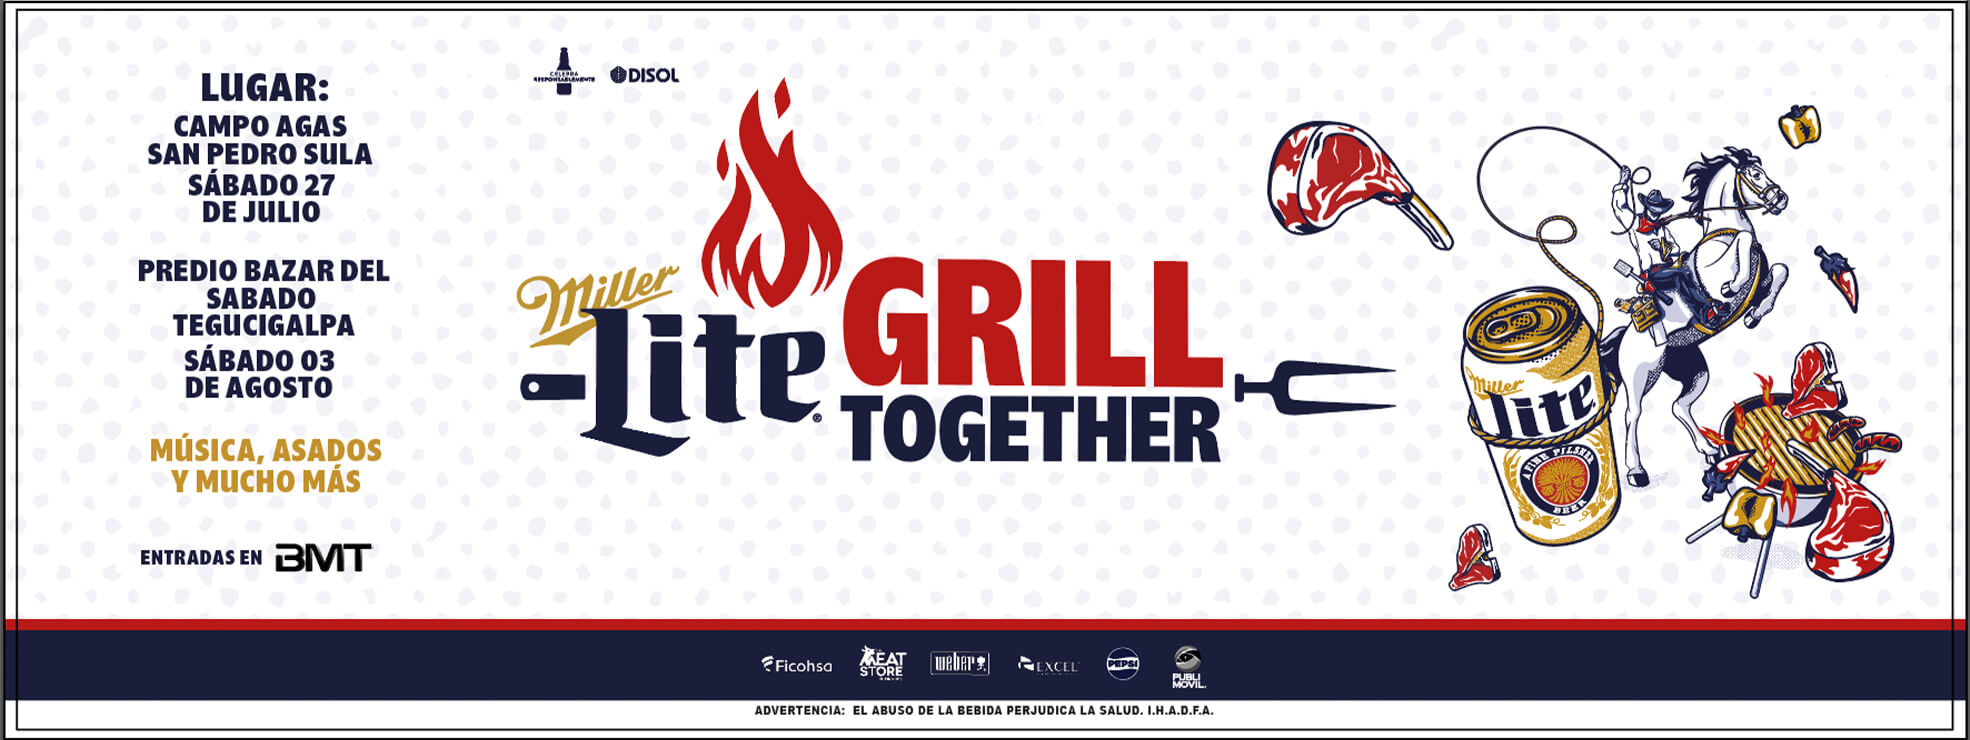 Miller Lite Grill Together